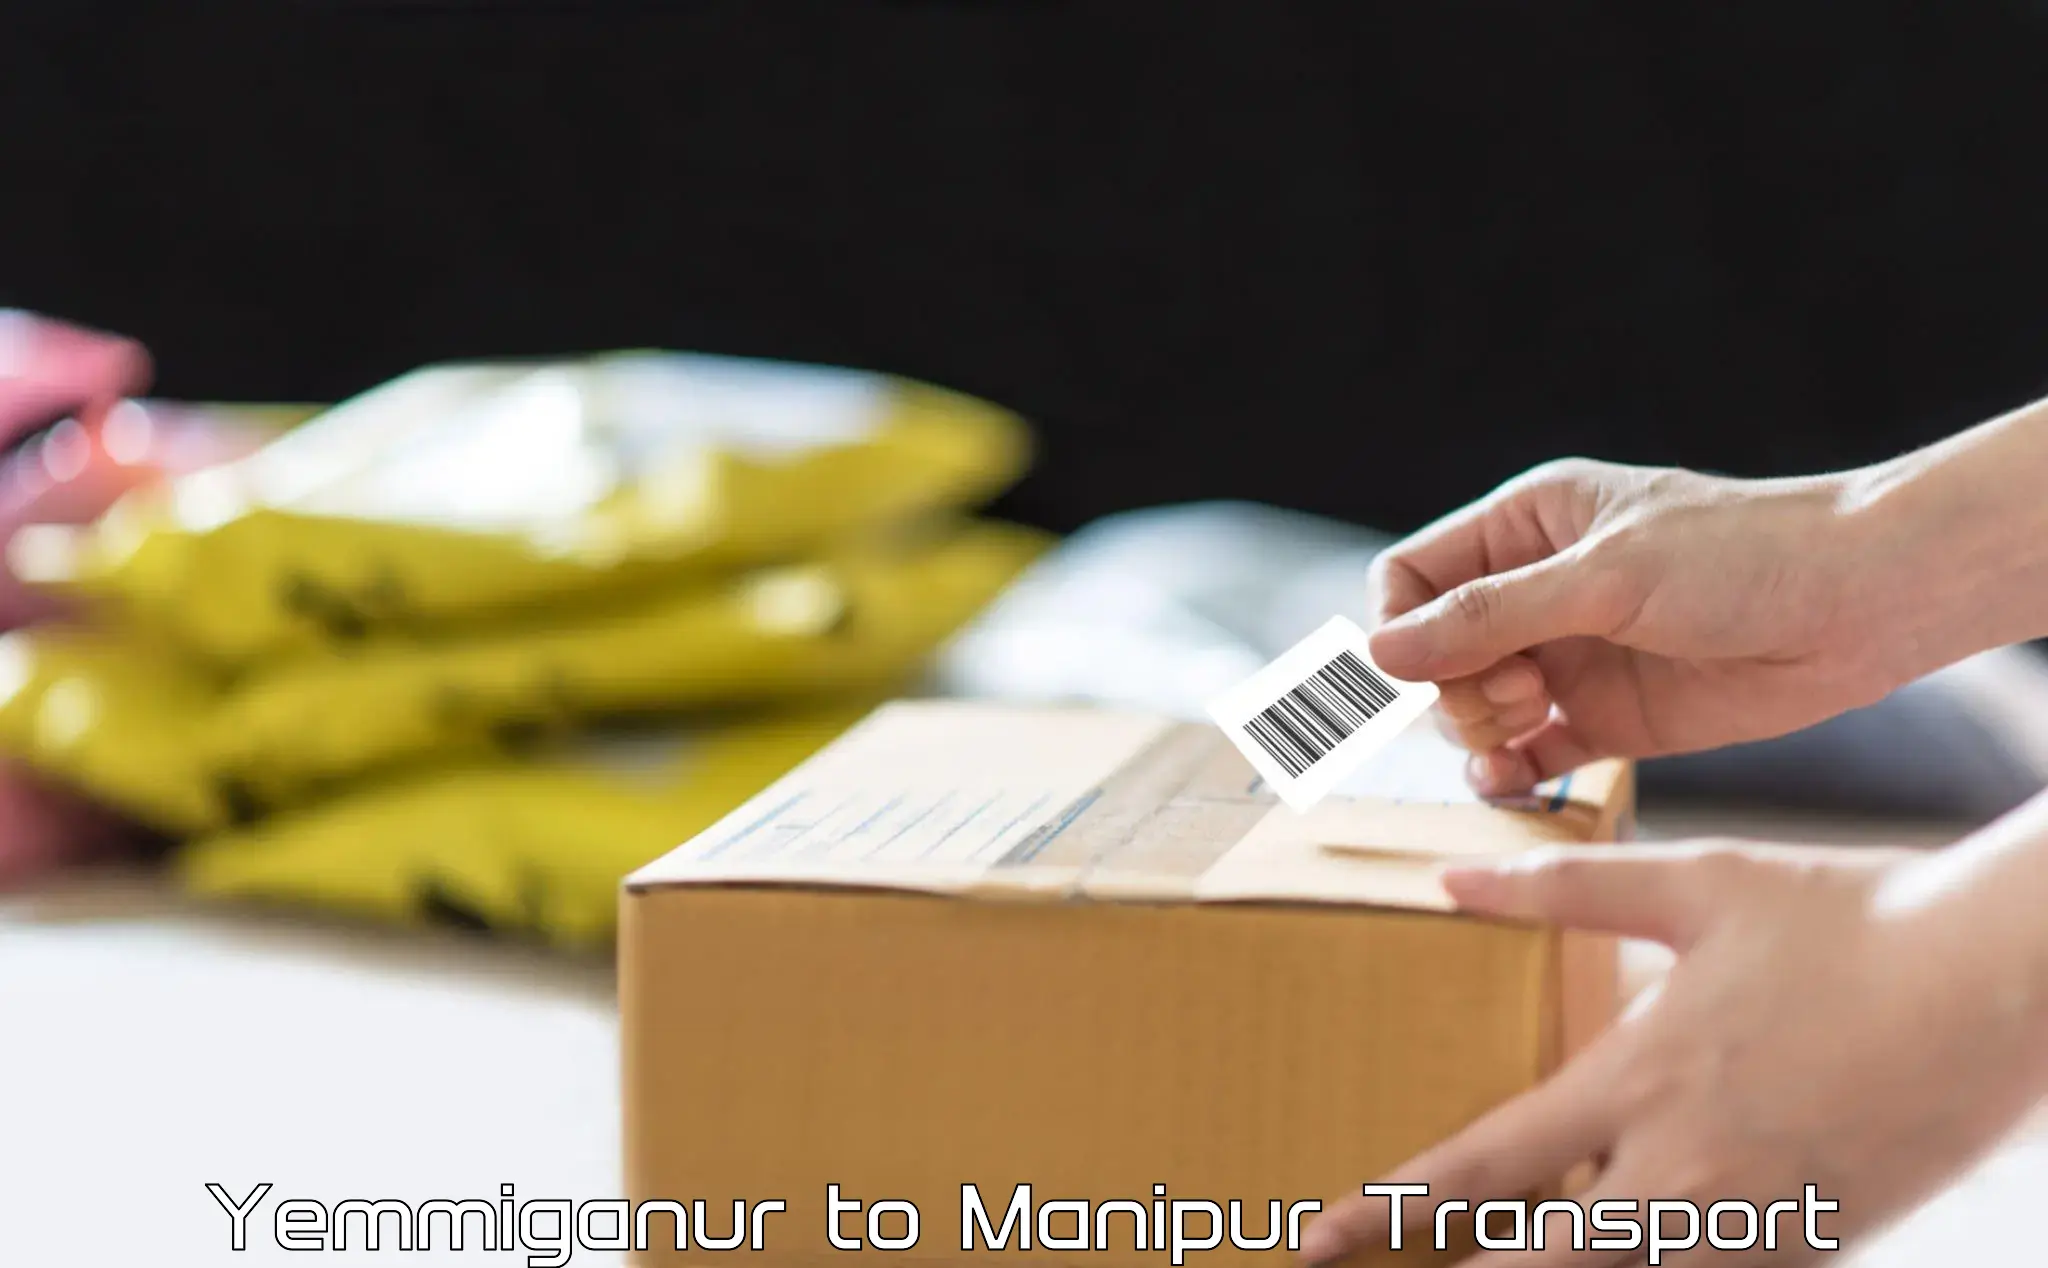 Lorry transport service Yemmiganur to Churachandpur